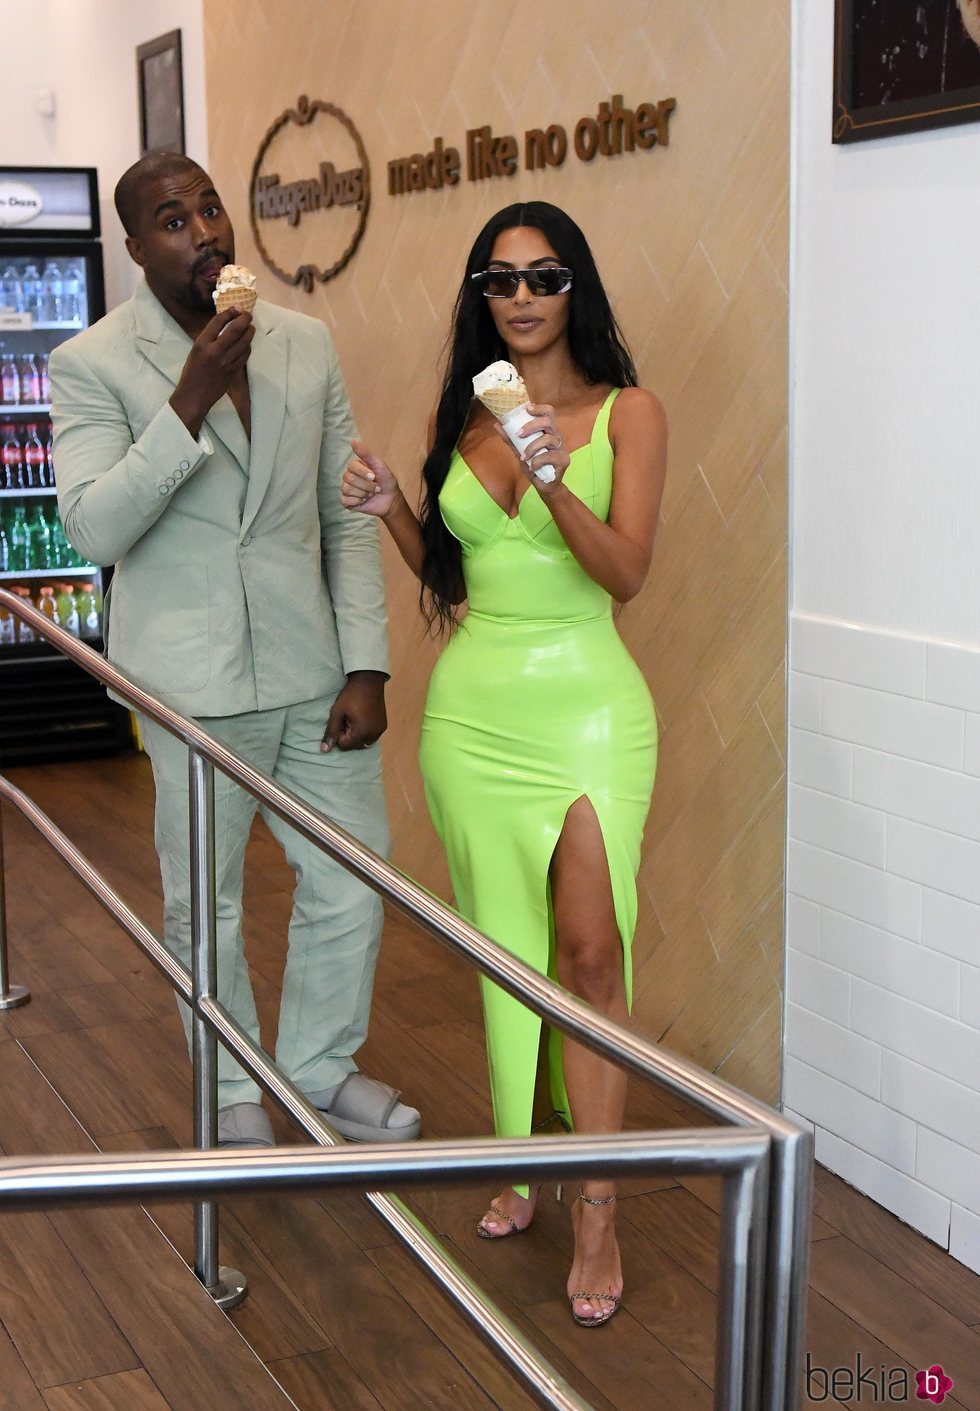 Kim Kardashian y Kanye West comiendo un helado en Miami